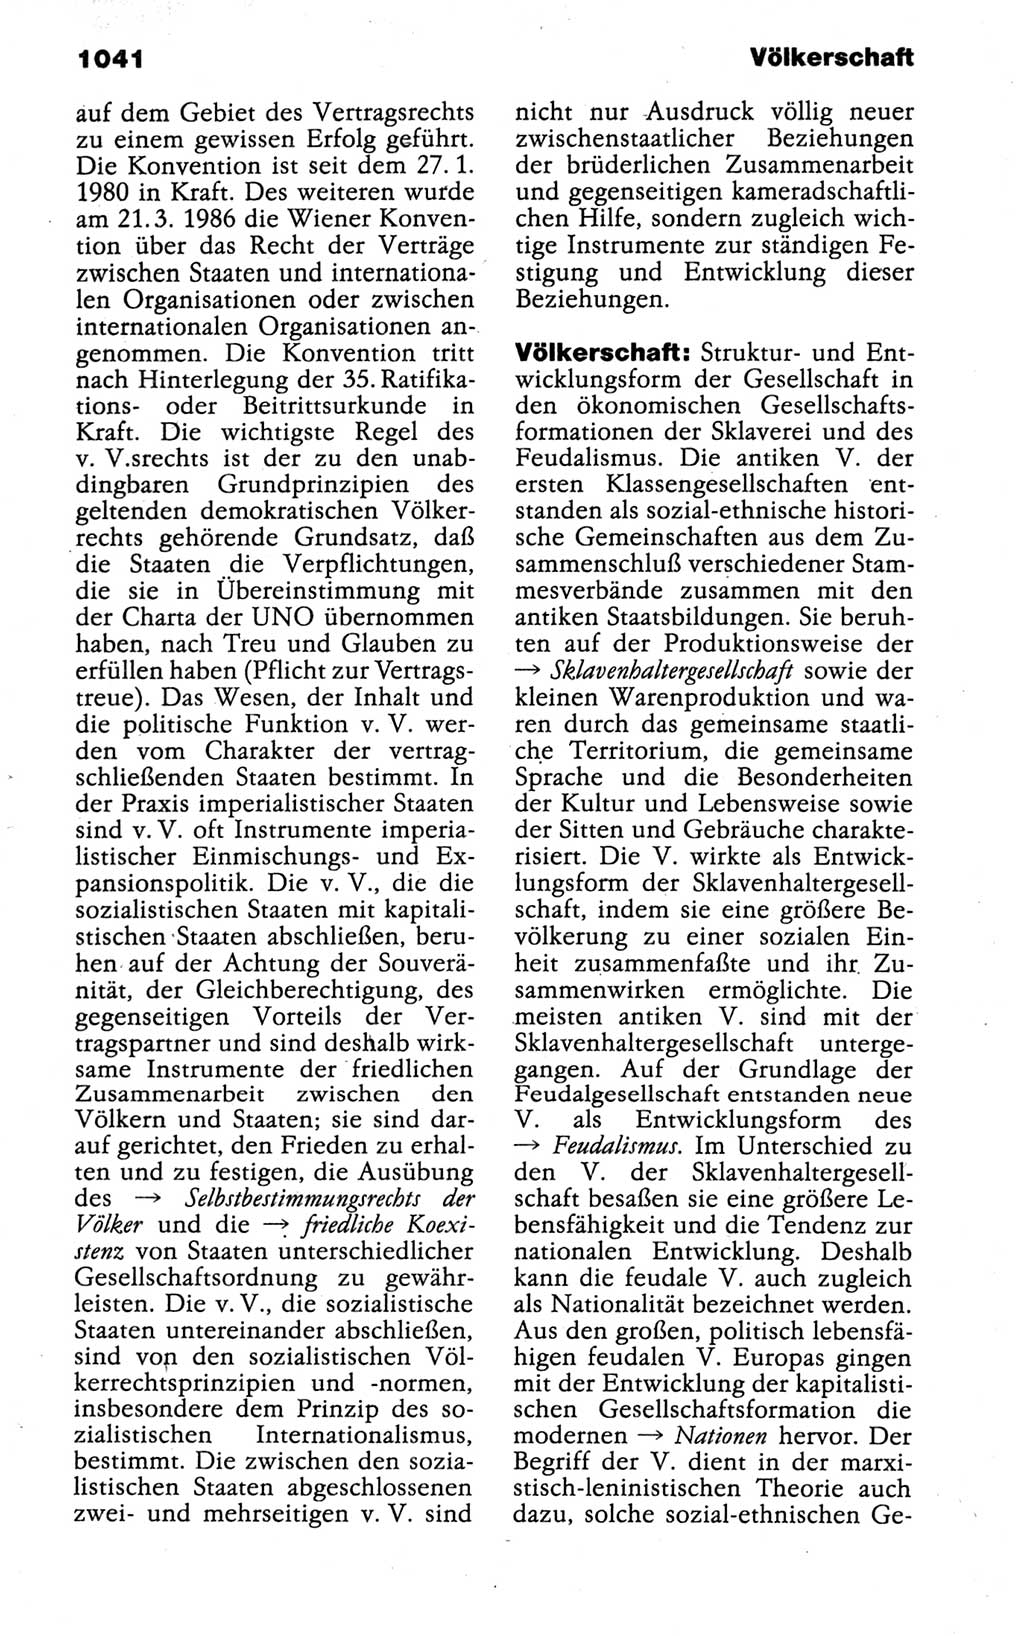 Kleines politisches Wörterbuch [Deutsche Demokratische Republik (DDR)] 1988, Seite 1041 (Kl. pol. Wb. DDR 1988, S. 1041)